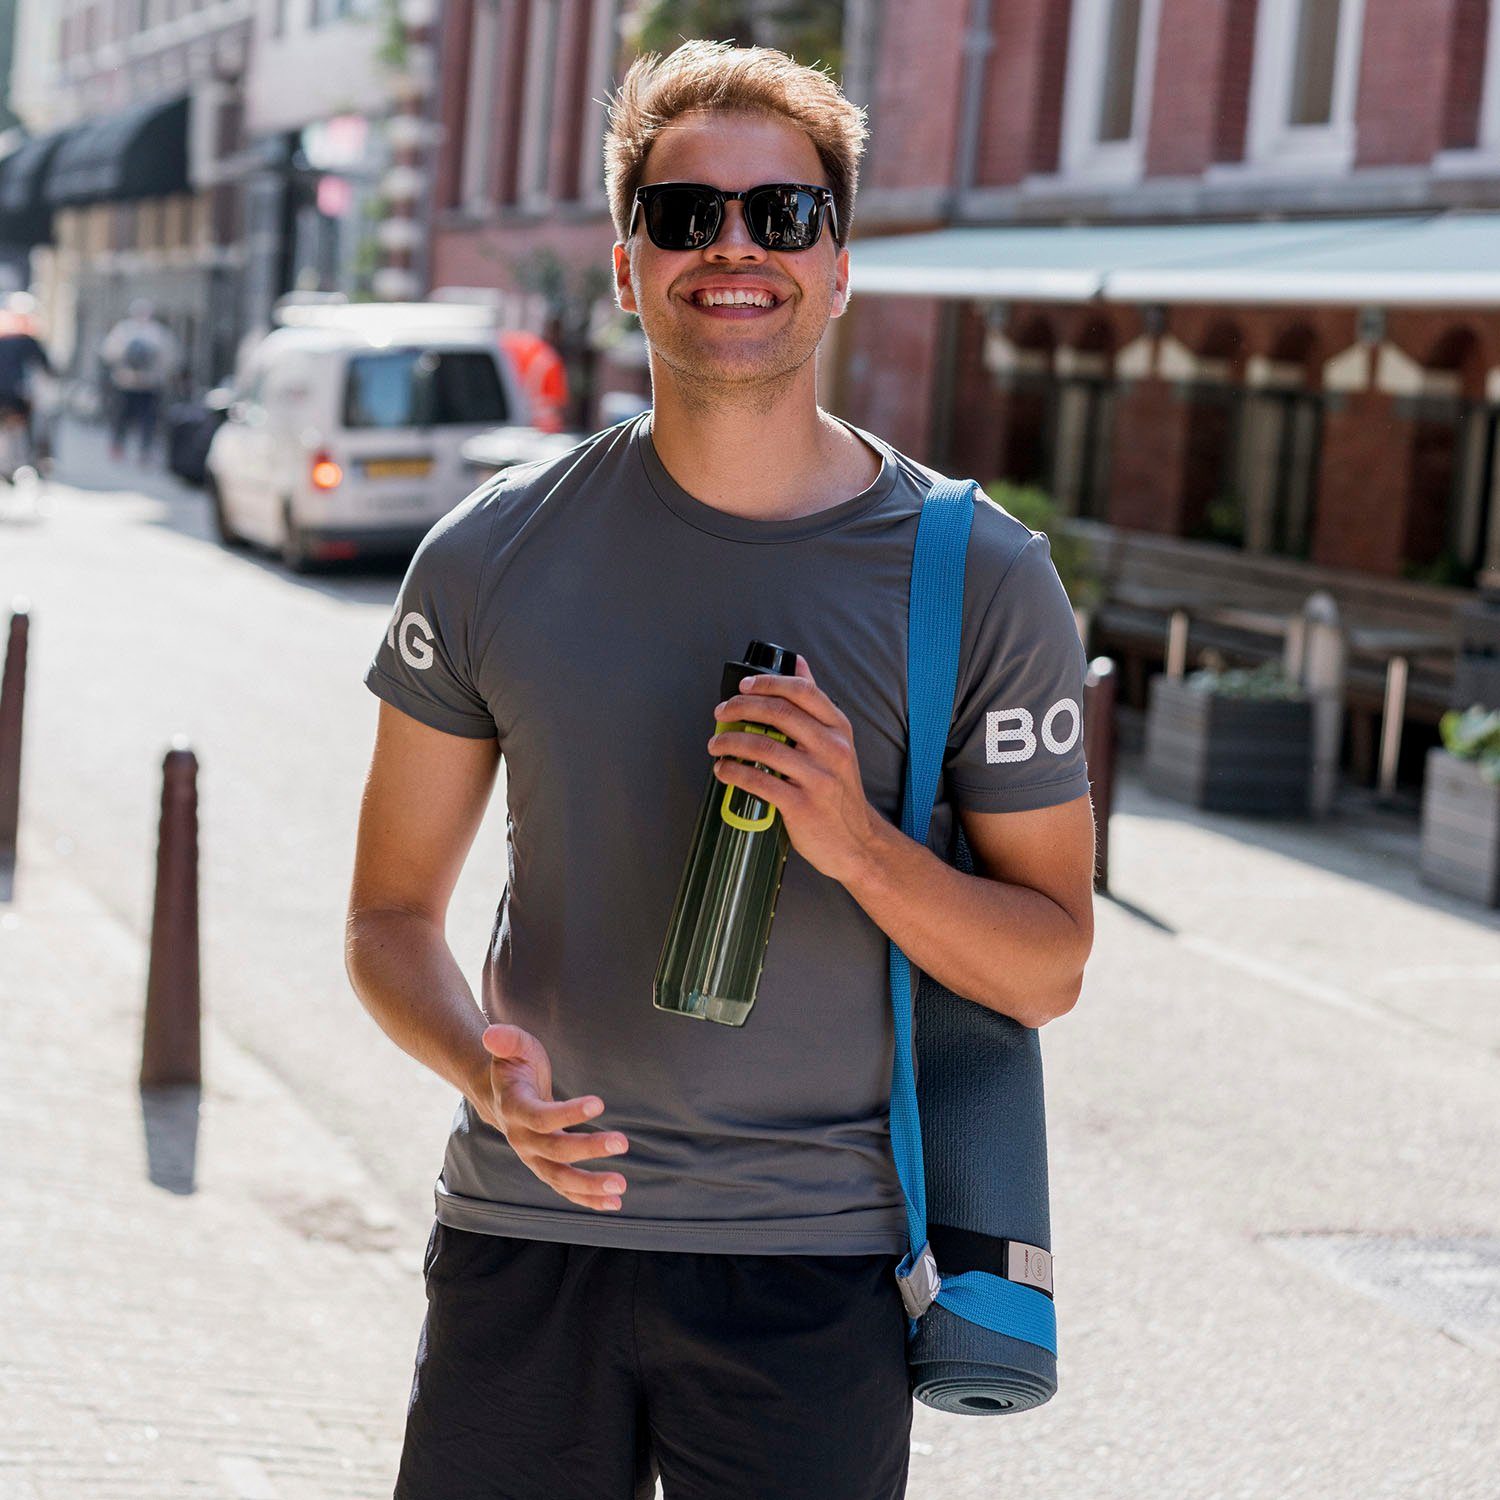 Kunststoff, 0,8 grün Tracker, Liter aladdin Trinkflasche Sports auslaufsicher,